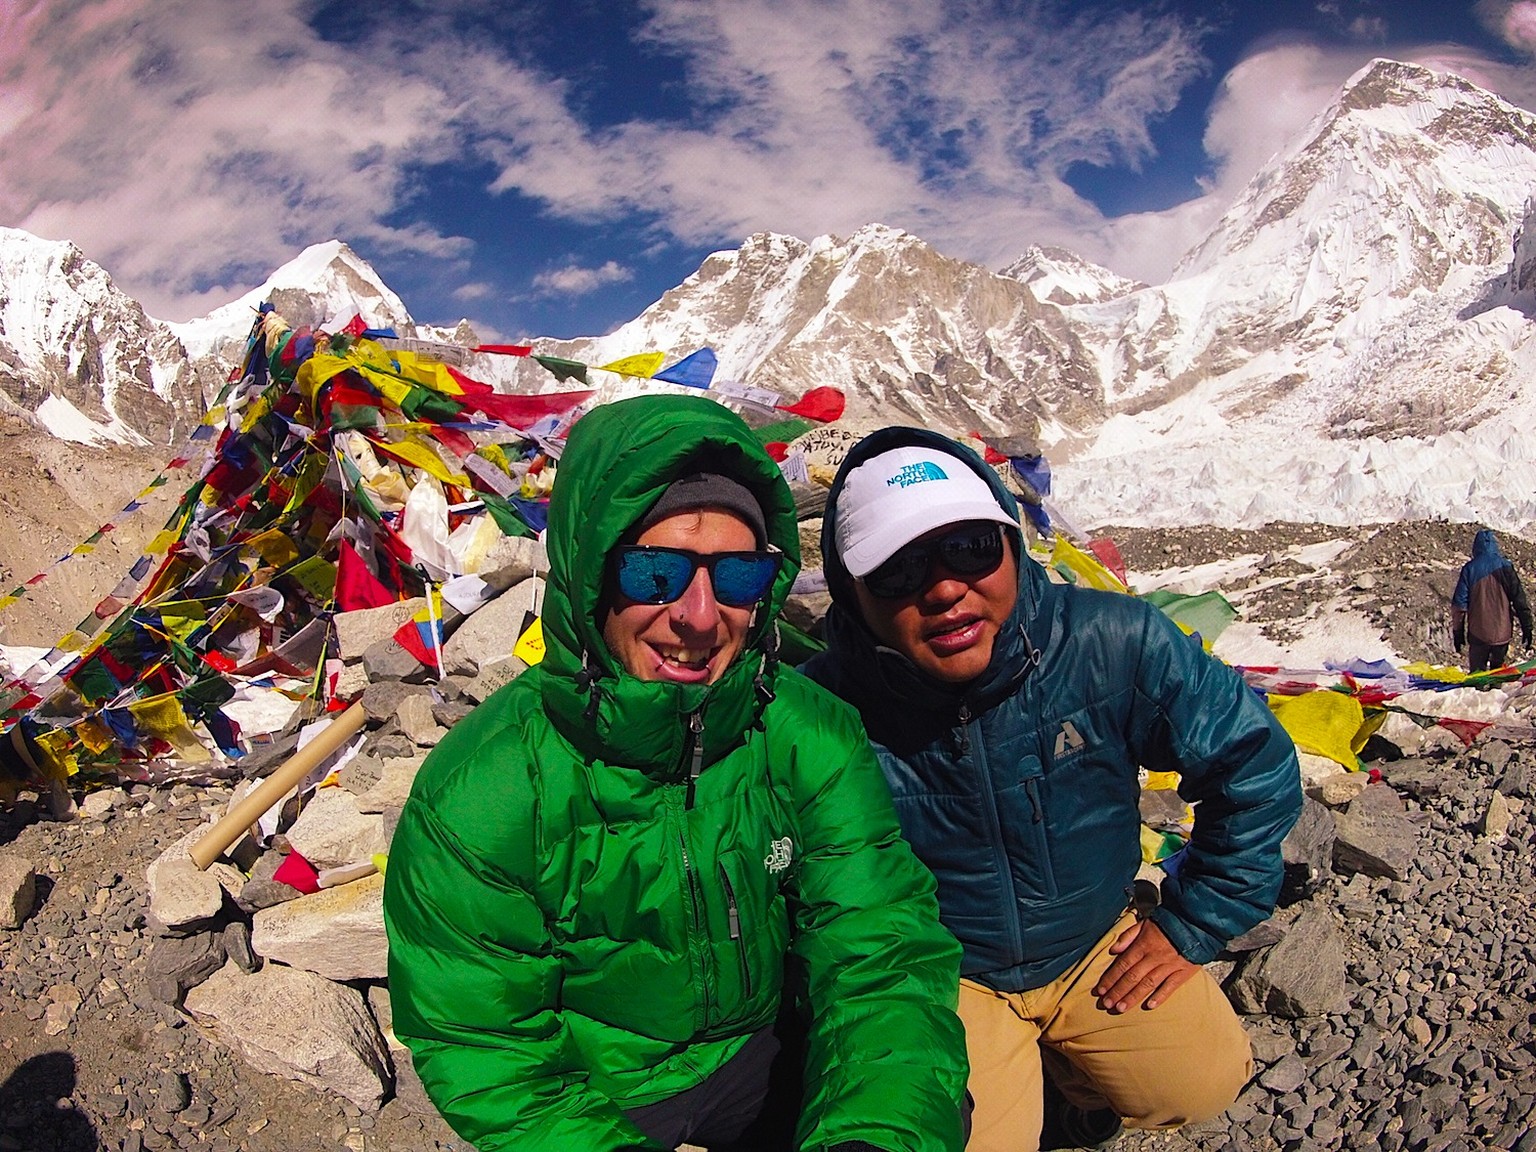 Daniel Buchs mit Ash Gurung am Mount Everest. Ein halbes Jahr später starb der Sherpa in einer Eislawine.